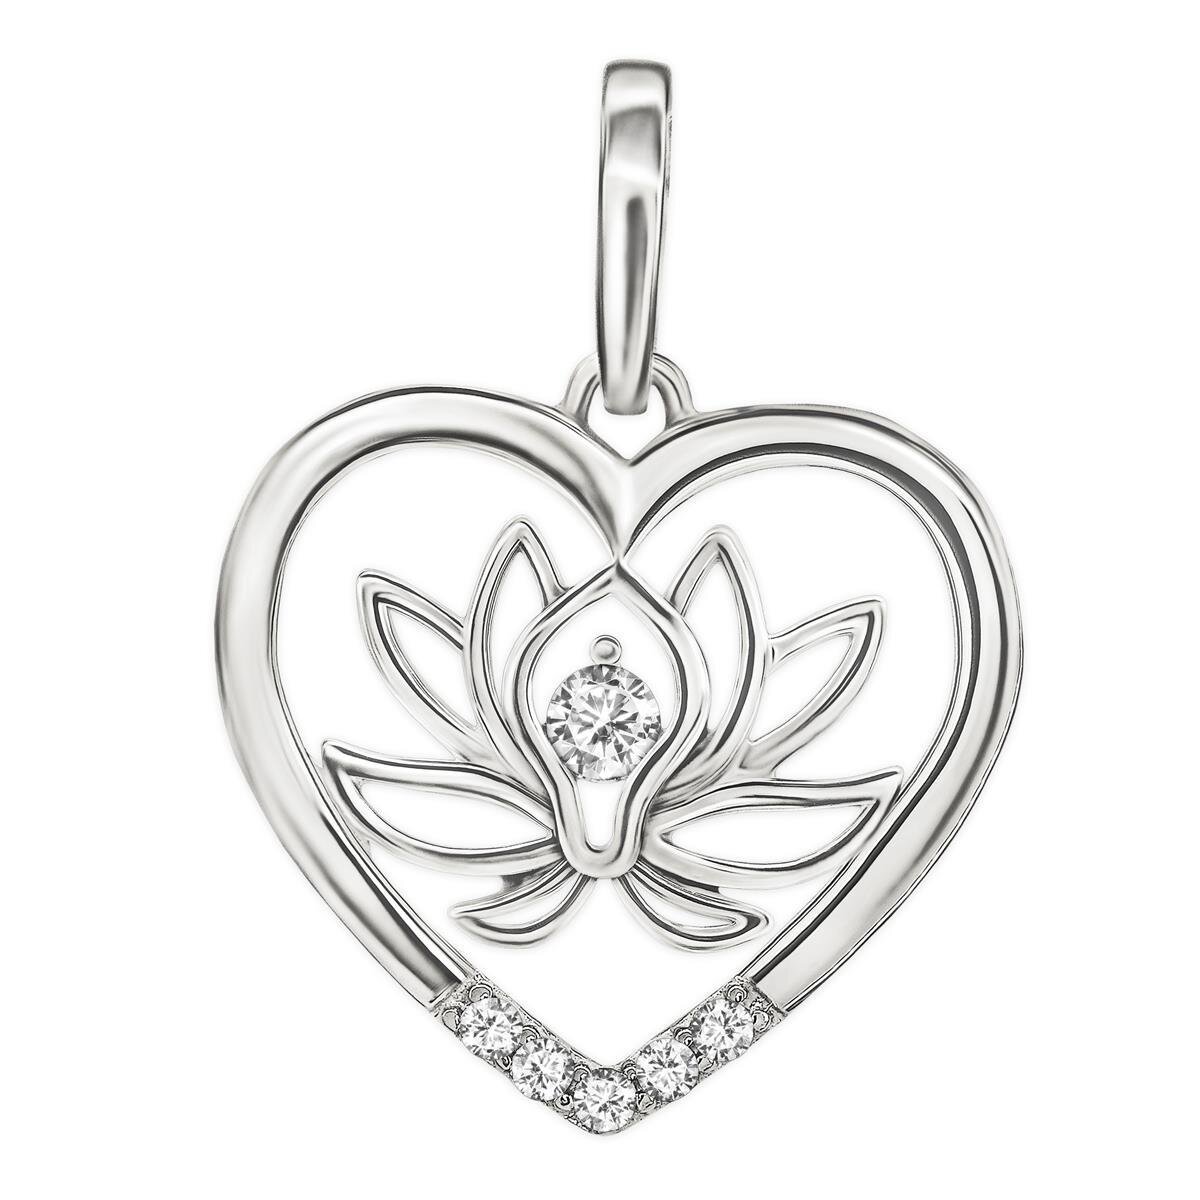 Silberner Anhänger Lotusblume im Herz teils offen  Zirkonia glänzend Echt Silber 925